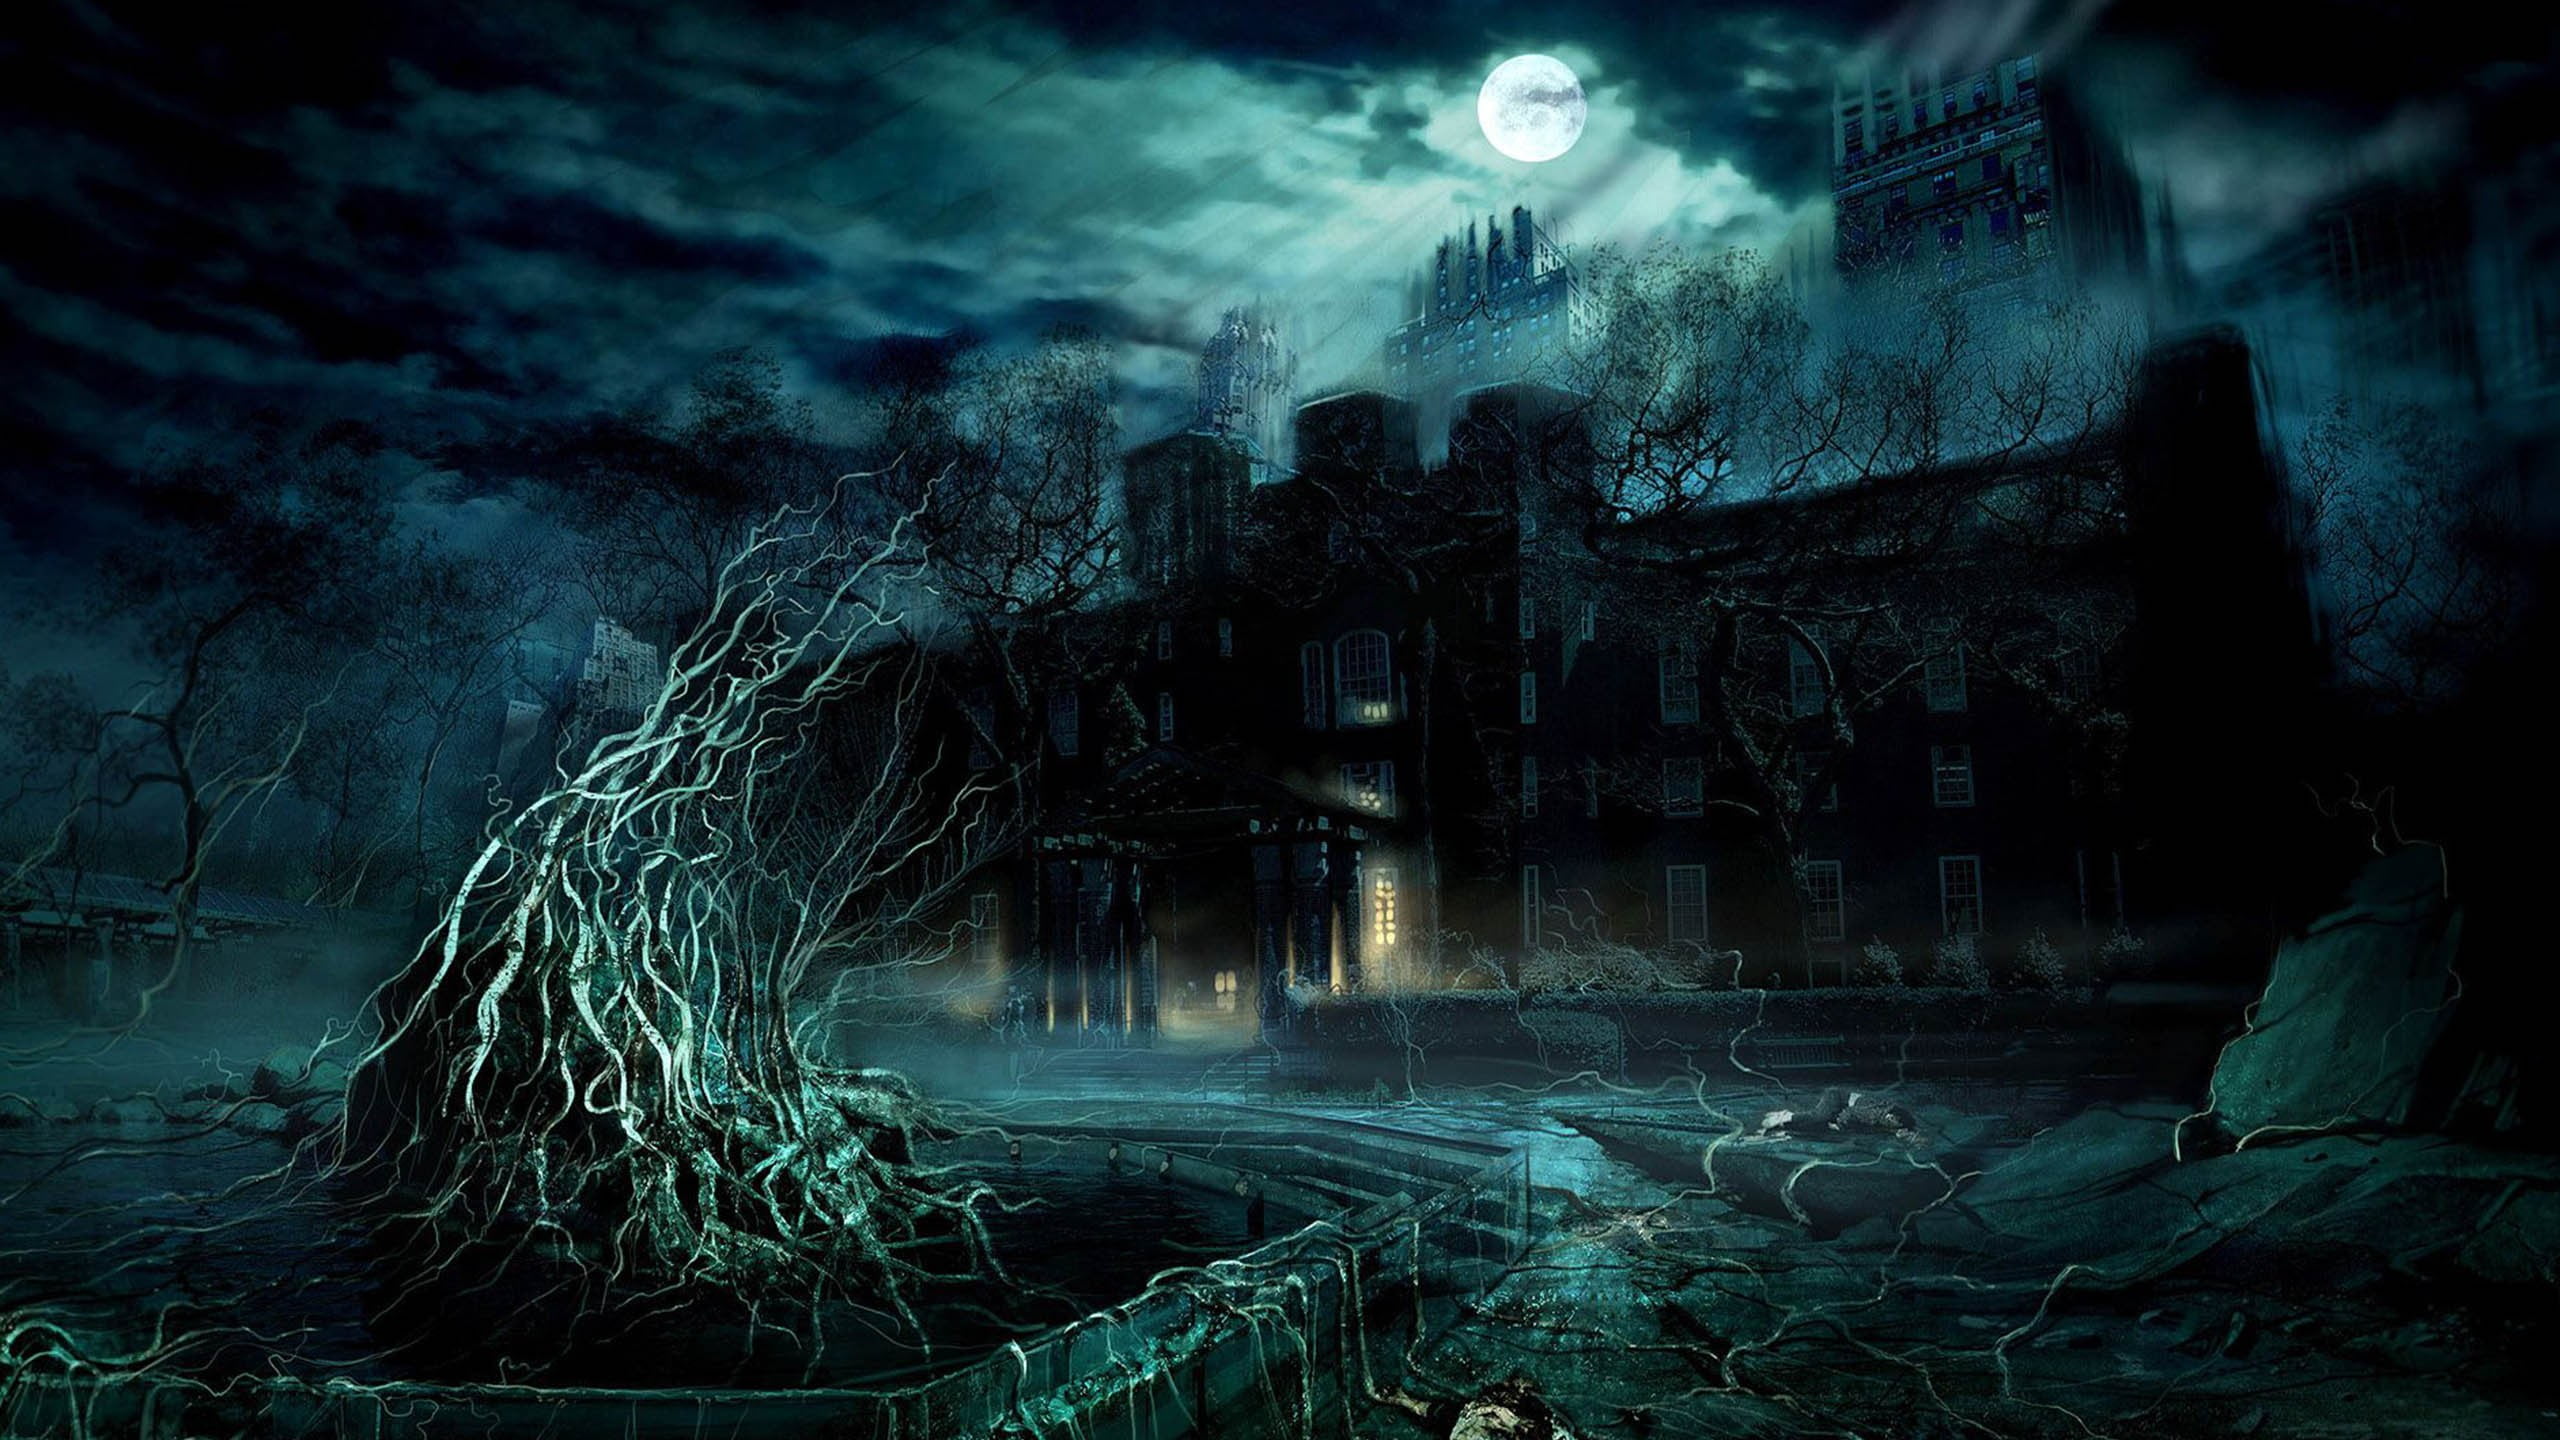 fantasy-art-spooky-building-night-wallpaper.jpg